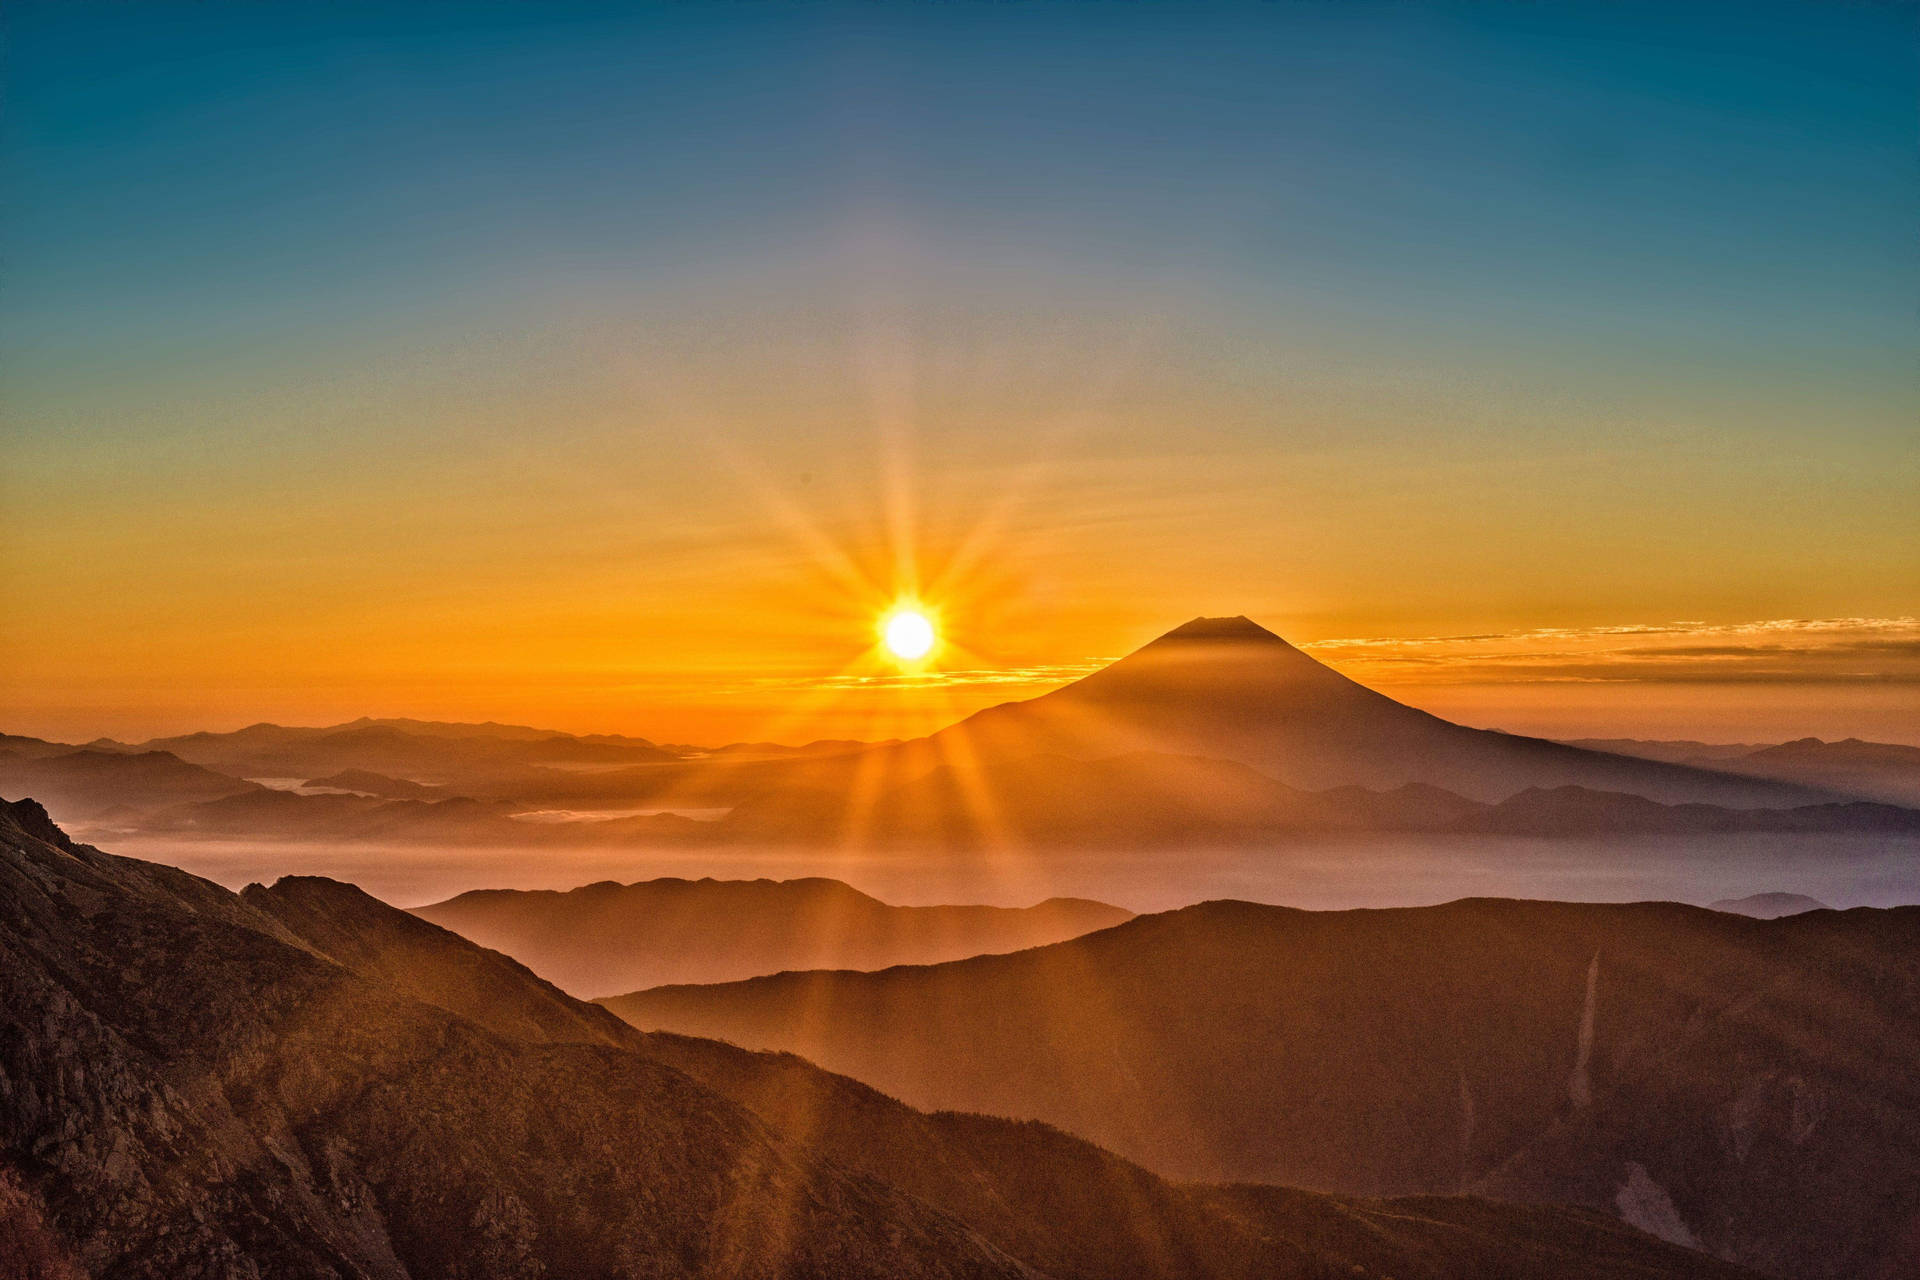 4k Landscape Mount Fuji Japan Sunset Wallpaper